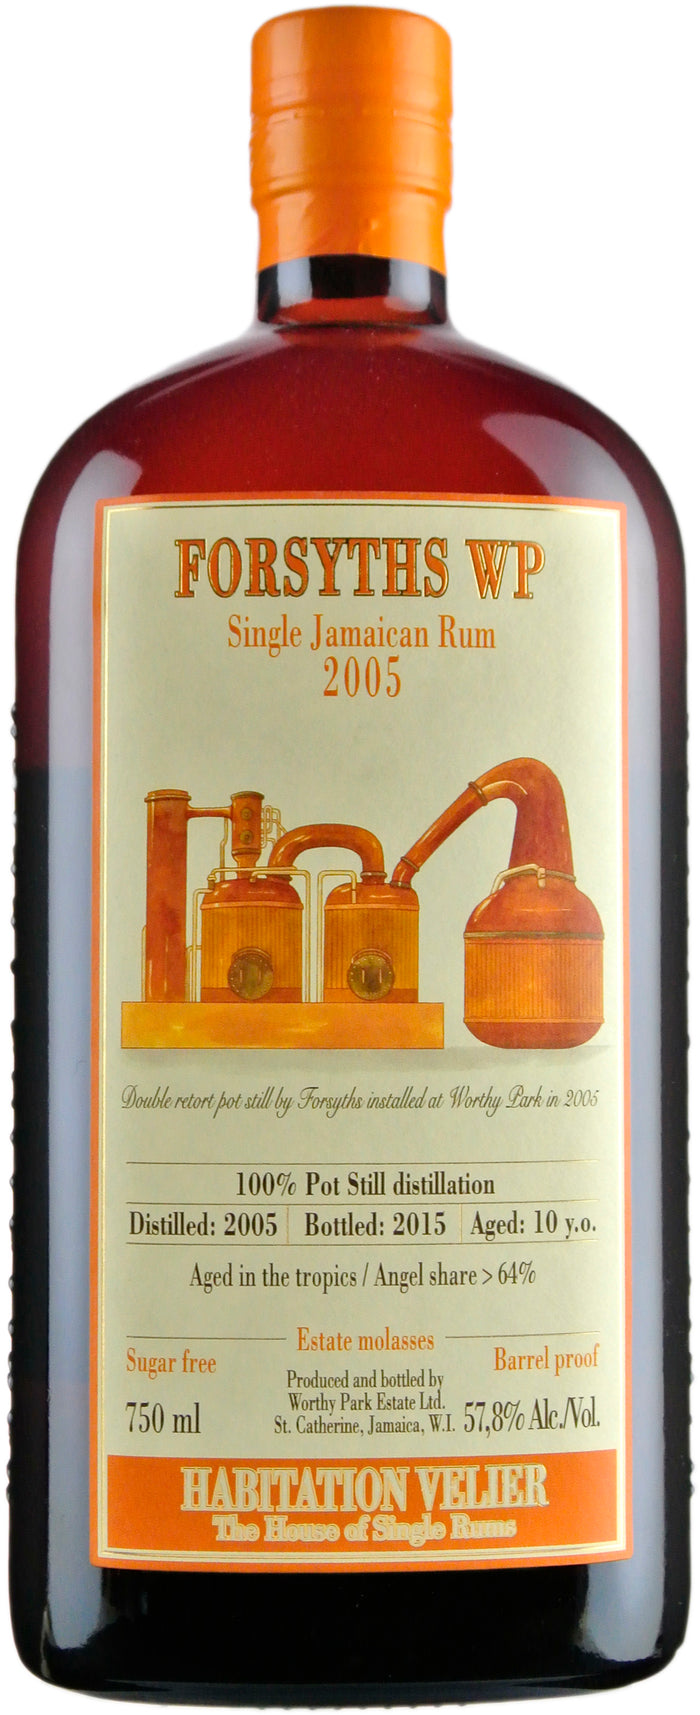 Forsyths WP 2005 Single Jamaican Rum